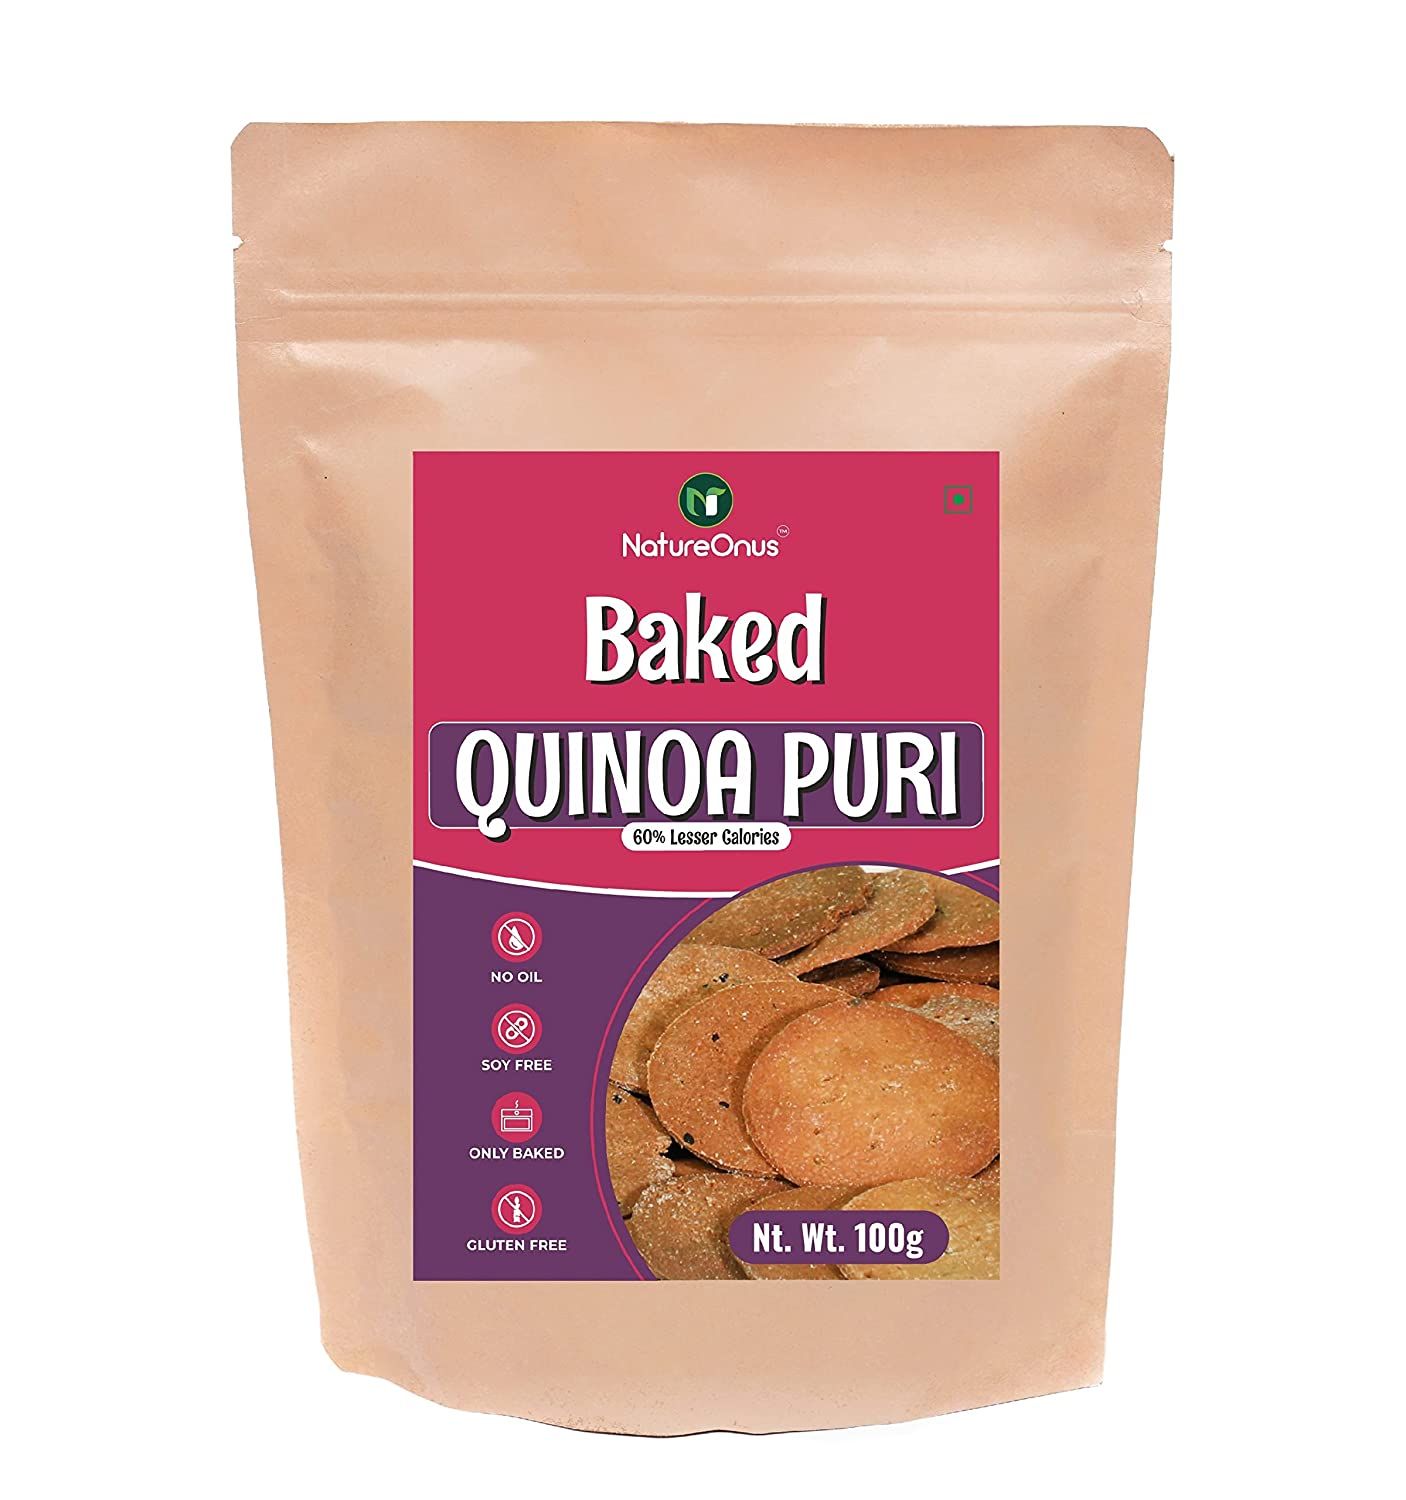 NatureOnus Baked Quinoa Puri Image